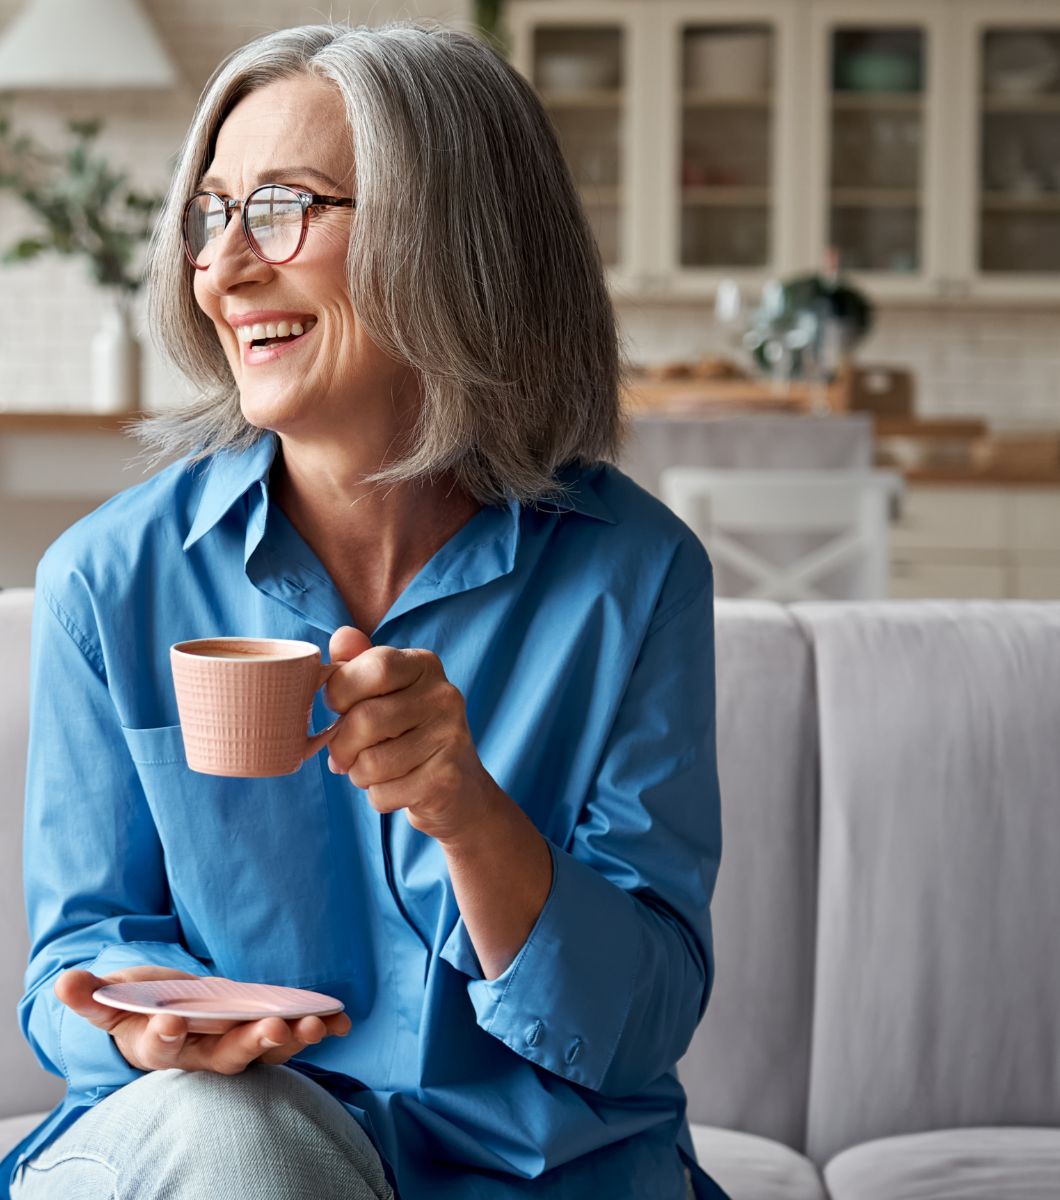 Woman drinking tea/coffee on sofa